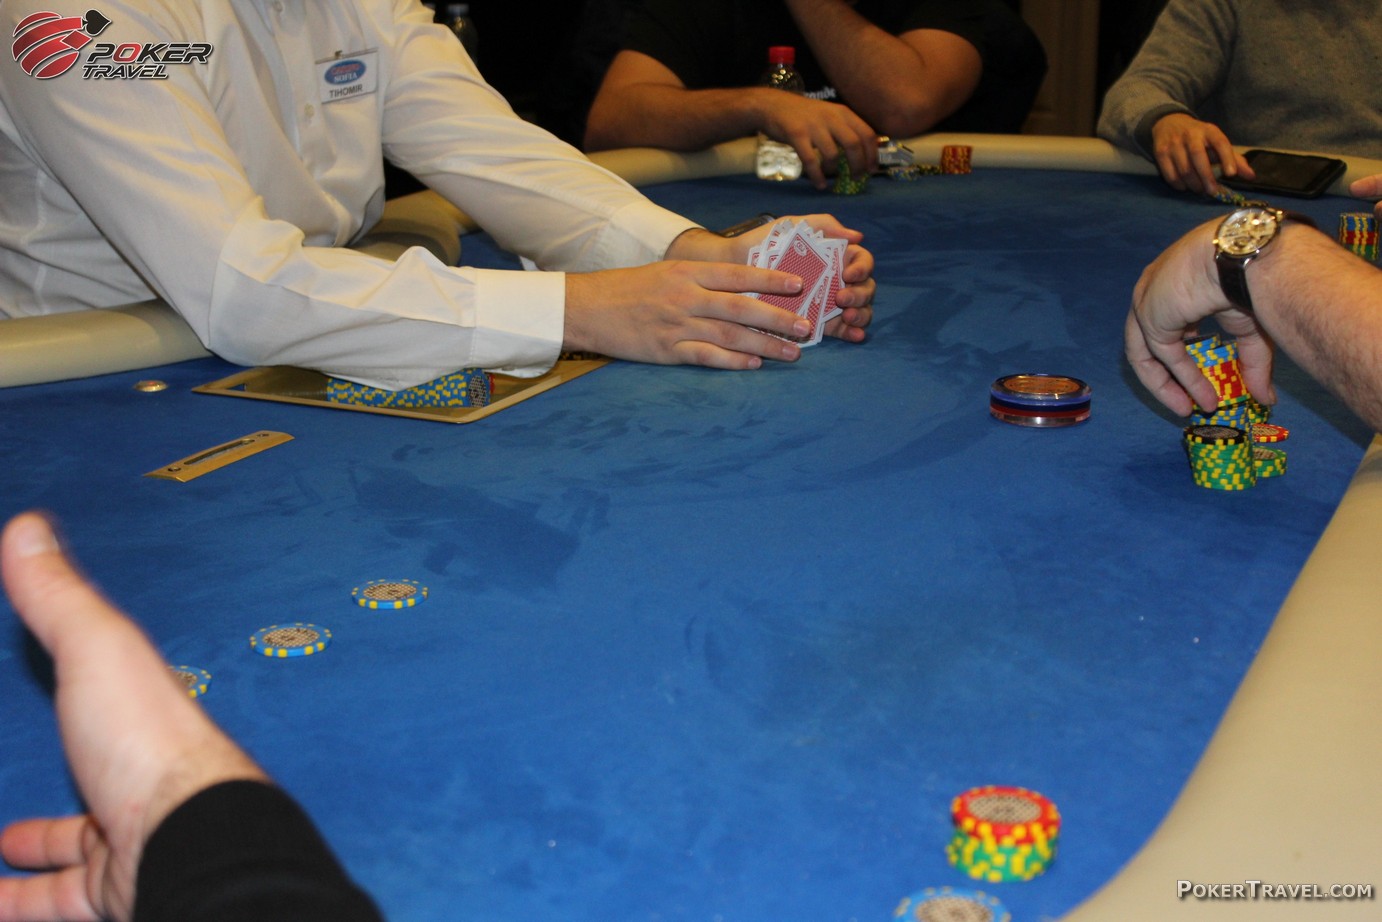 Casino radisson sofia poker